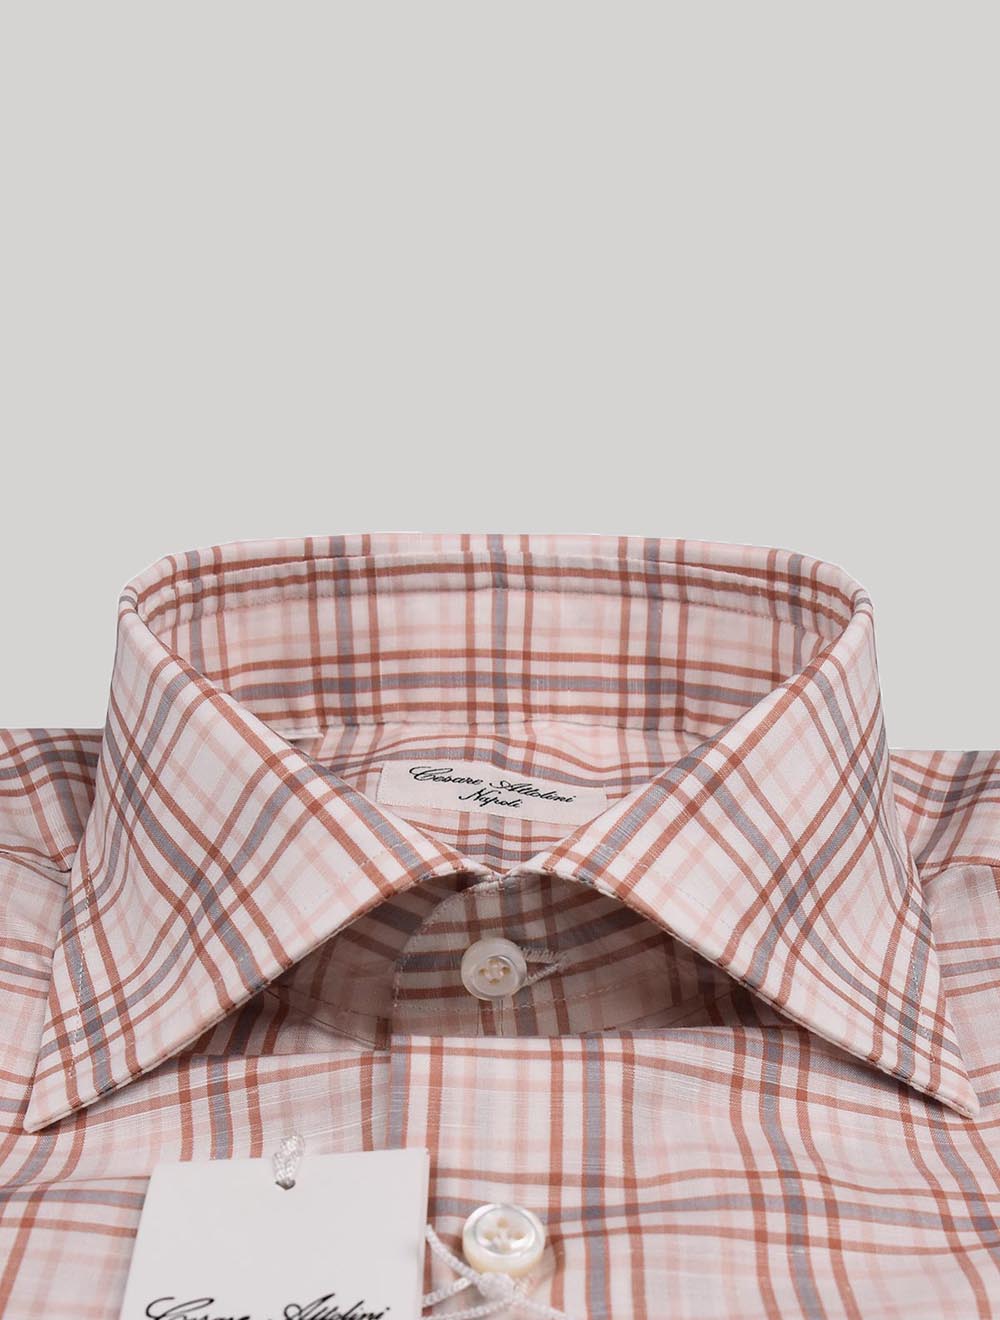 Cesare attolini įvairiaspalviai medvilniniai lininiai marškiniai